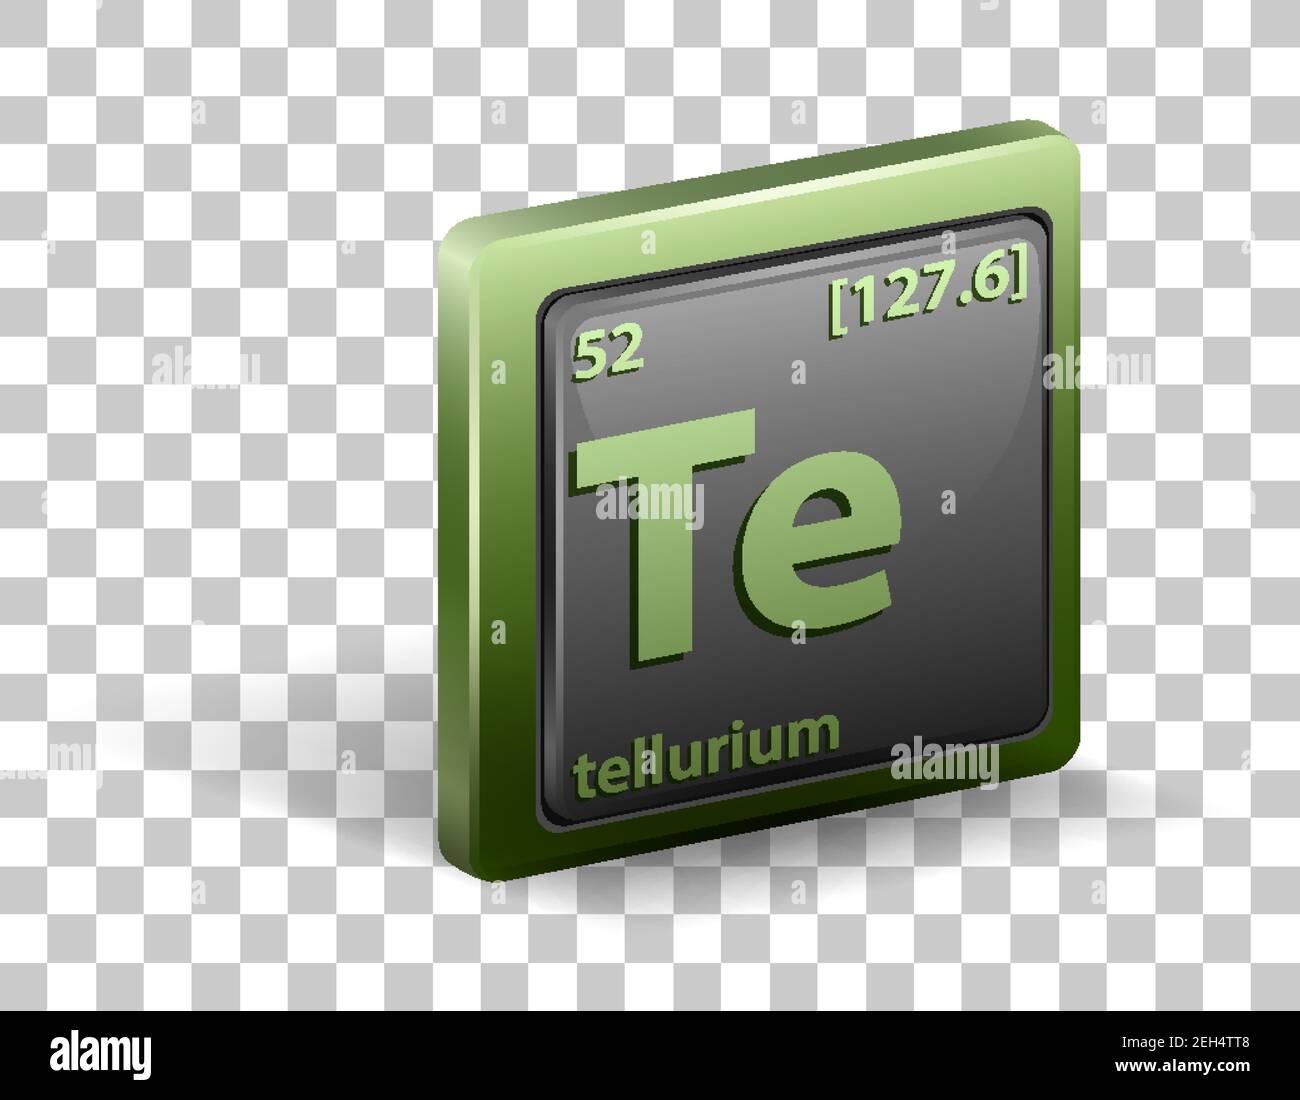 tellurium element symbol